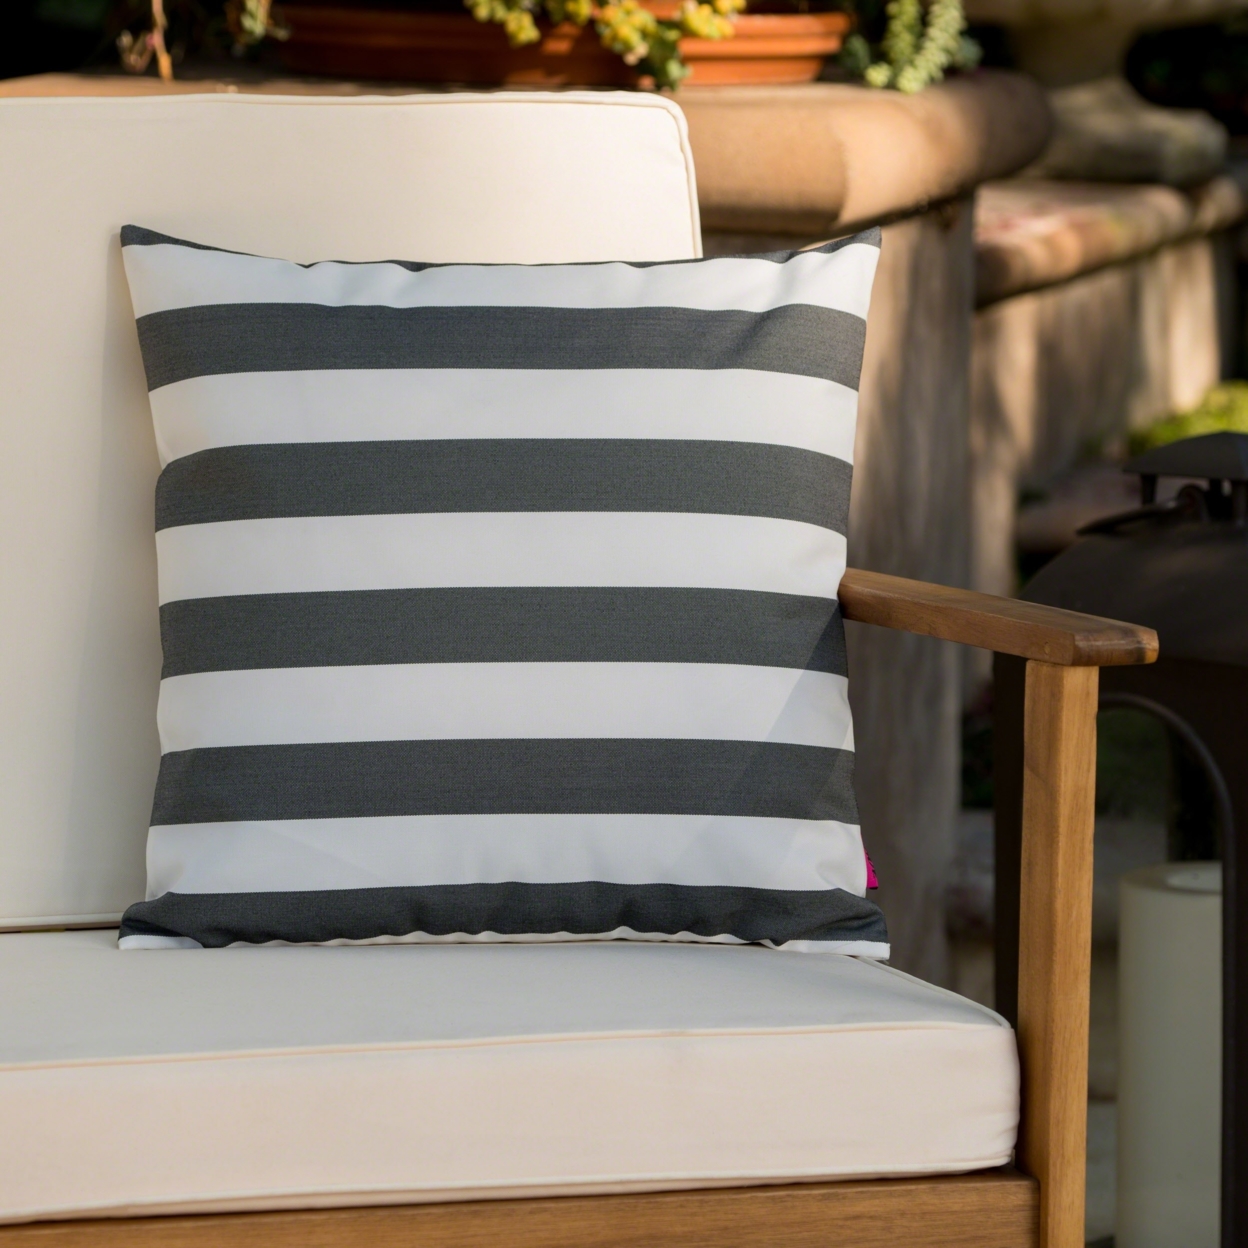 Coronado Outdoor Stripe Water Resistant Square Throw Pillow - Black/white, Set Of 2